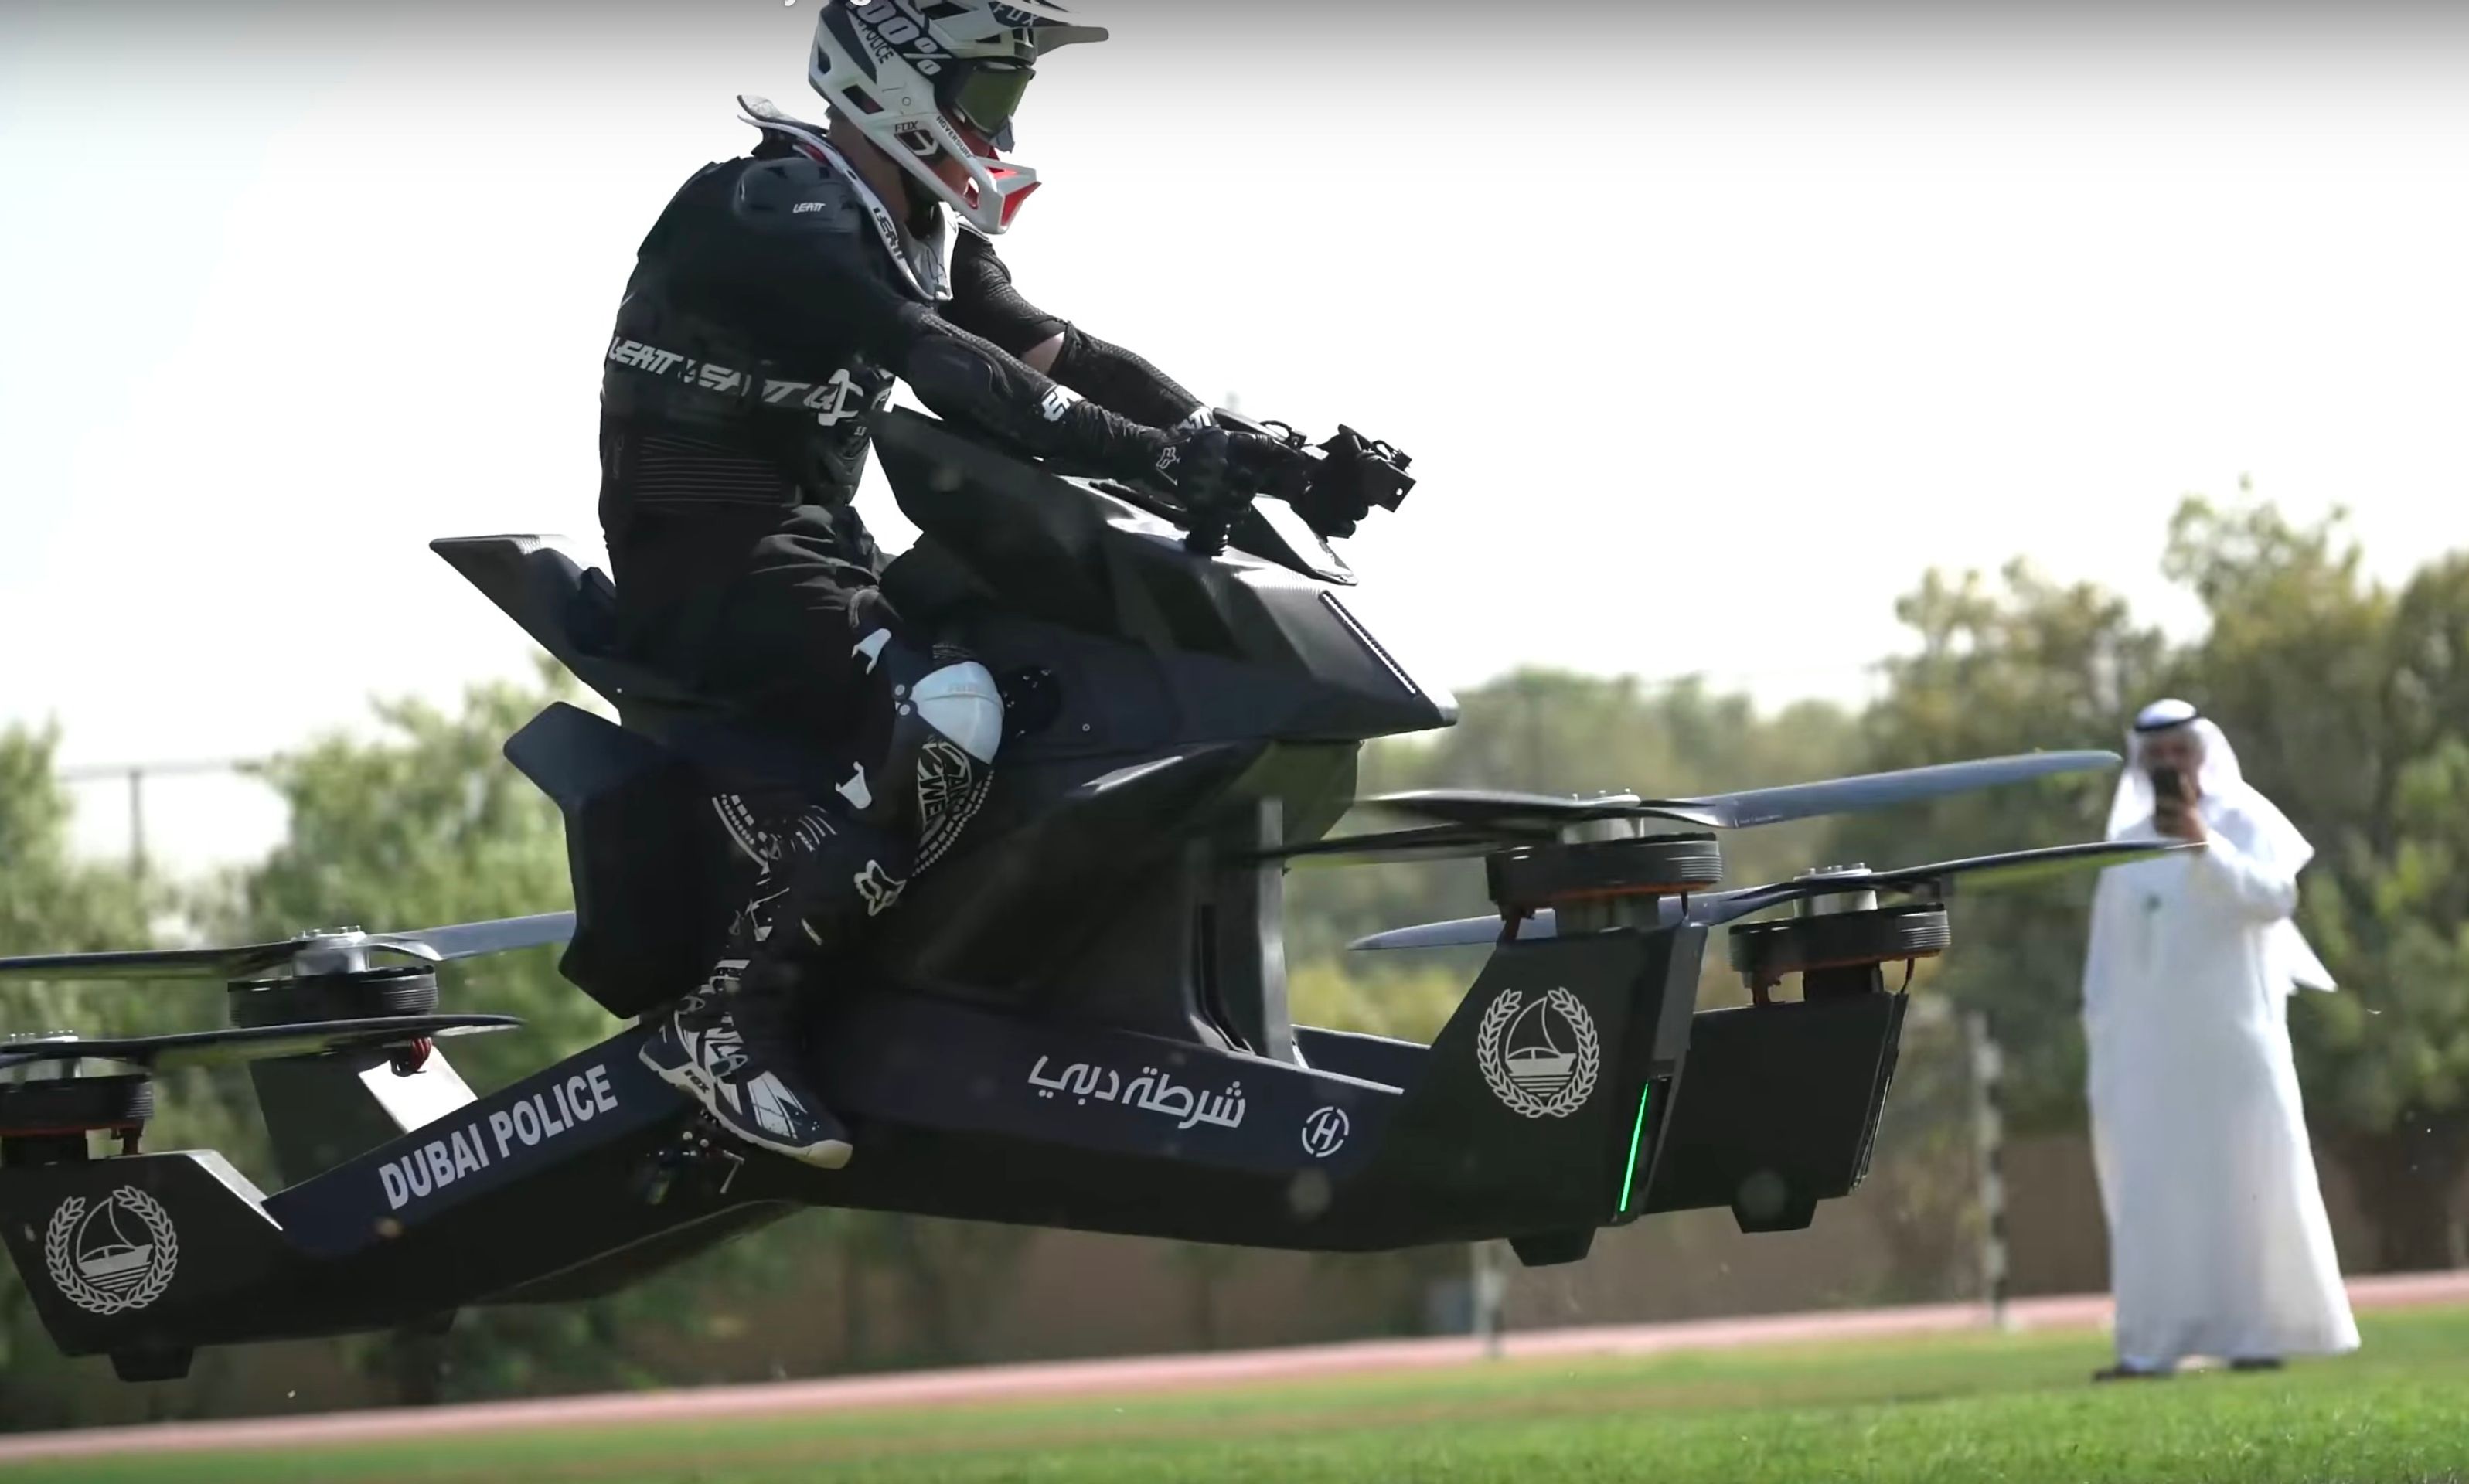 Létající motorka Hoverbike S3 2019 - 15 - Fotogalerie: Výcvik dubajské policie na létajícím stroji (1/10)